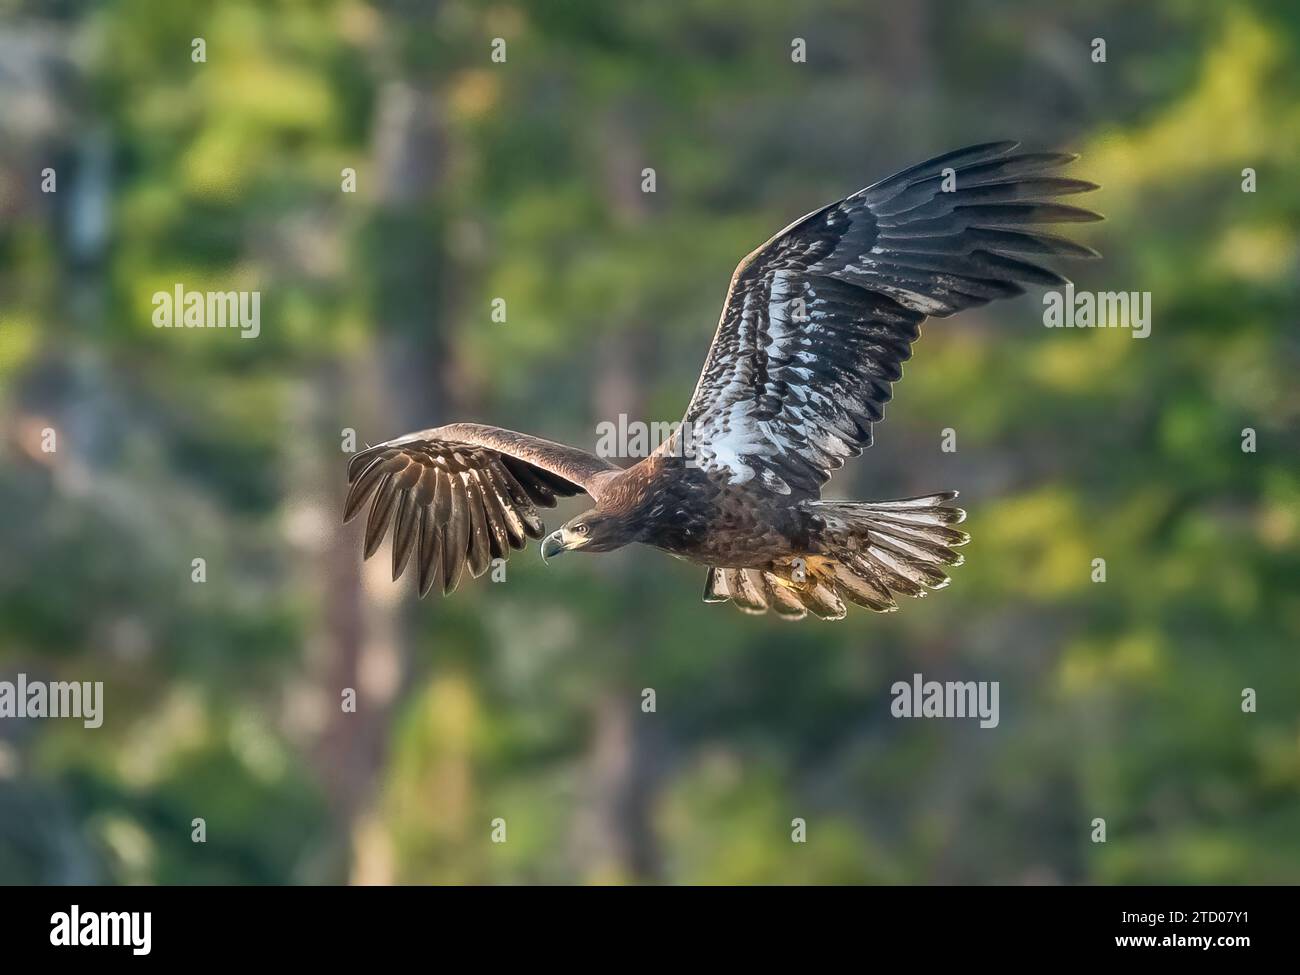 Juvenile Bald Eagle on the hunt Stock Photo